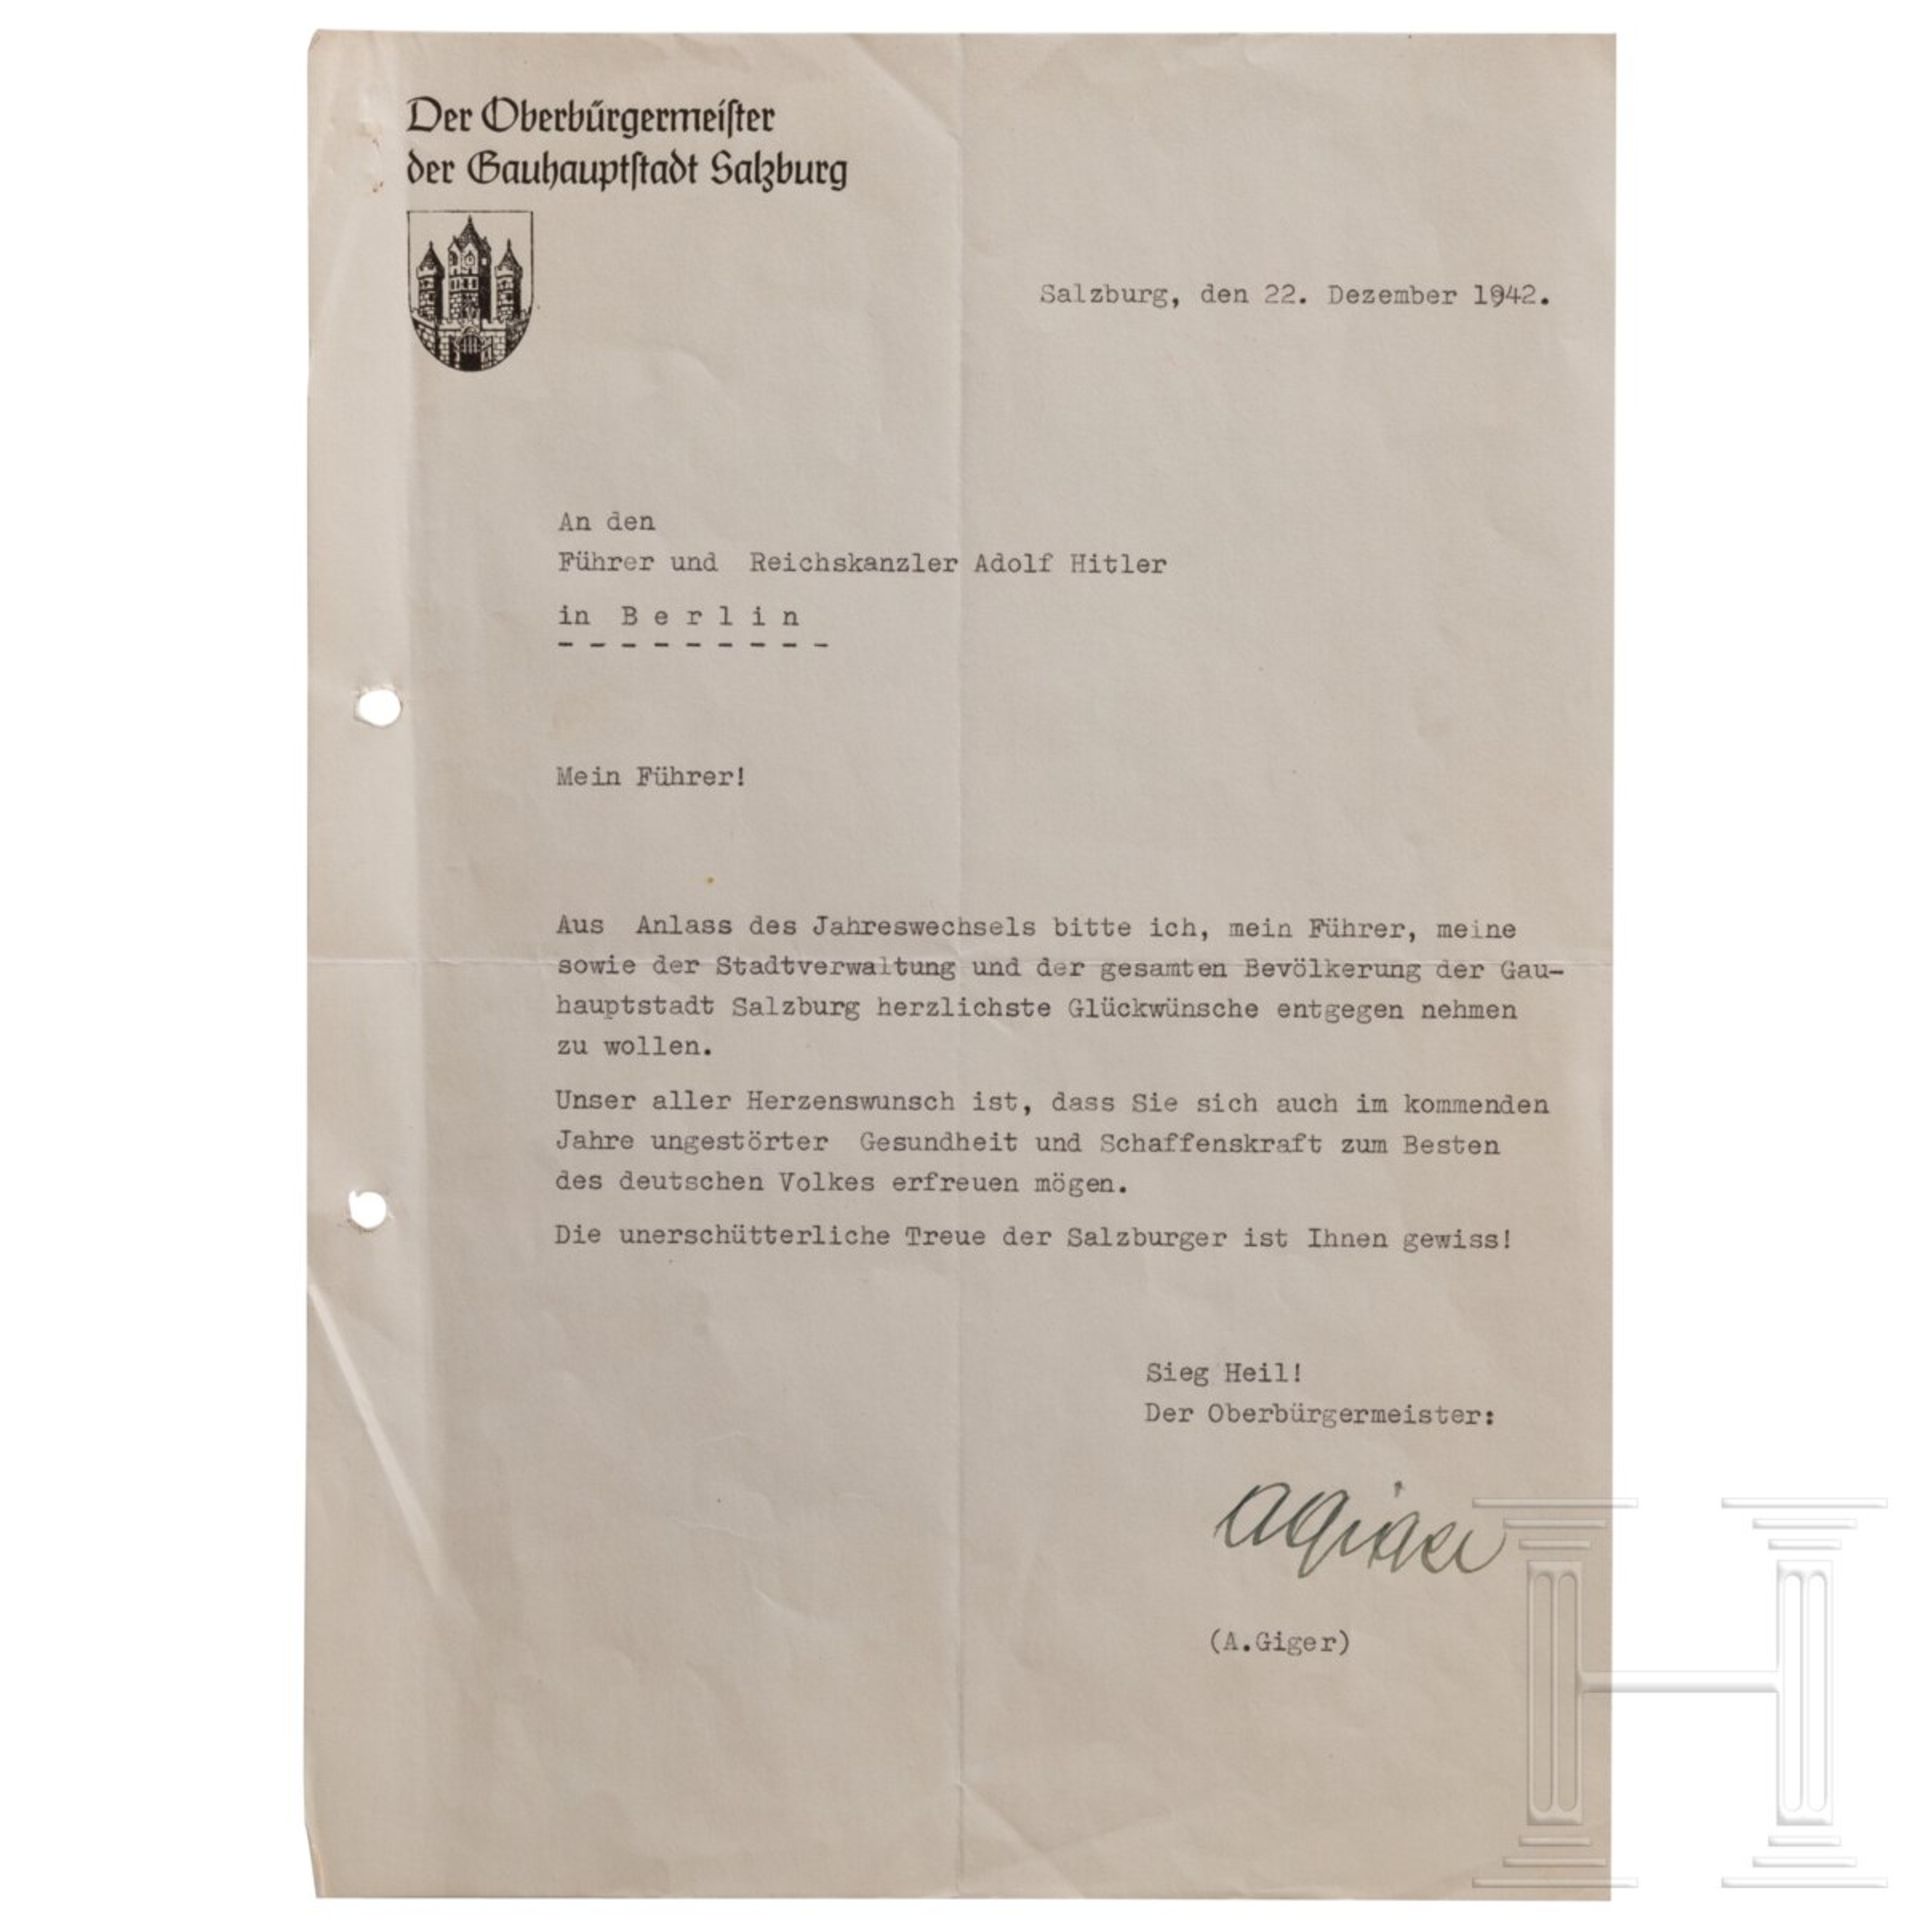 Anton Giger (1885 - 1945) - signiertes Glückwunschschreiben des Salzburger Oberbürgermeisters zum Ja